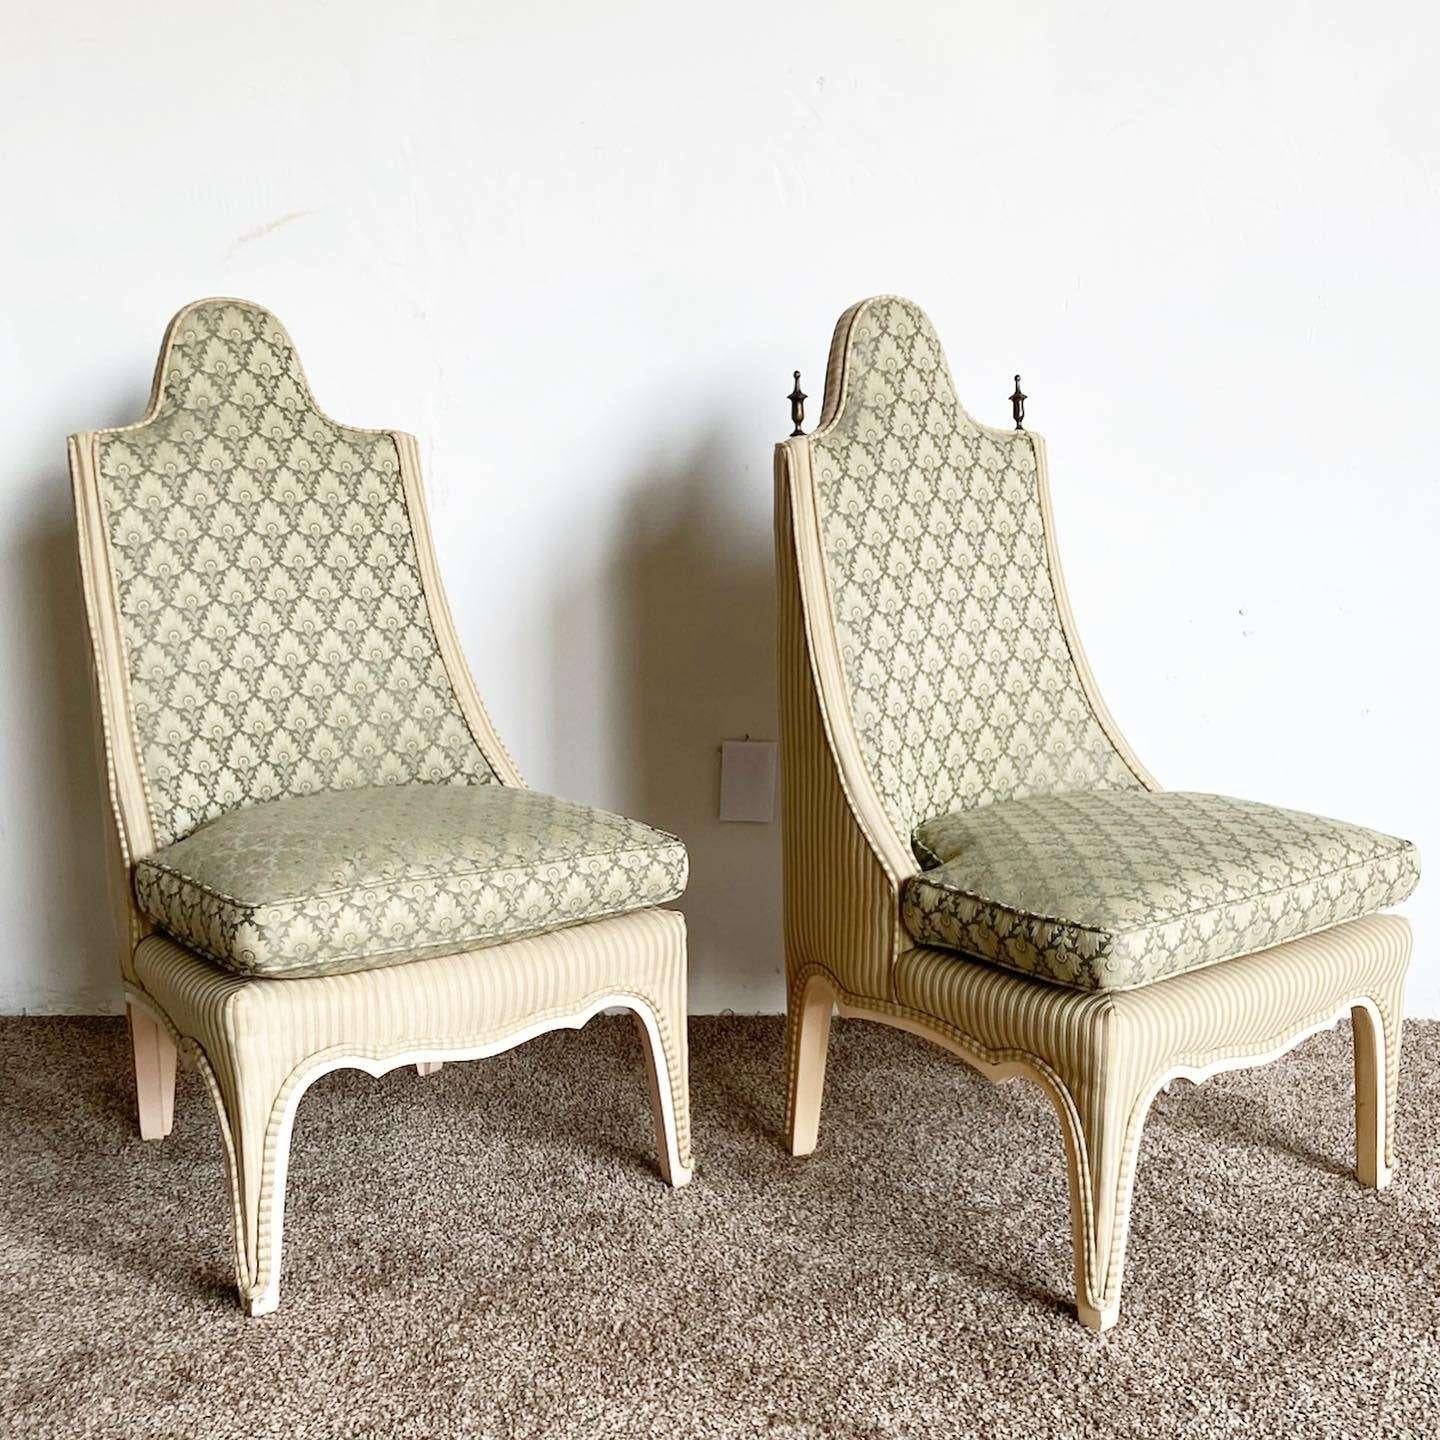 Superbe paire de fauteuils d'appoint vintage de style régence. Chacun d'entre eux est doté d'un revêtement vert et d'un cadre sculpté.
